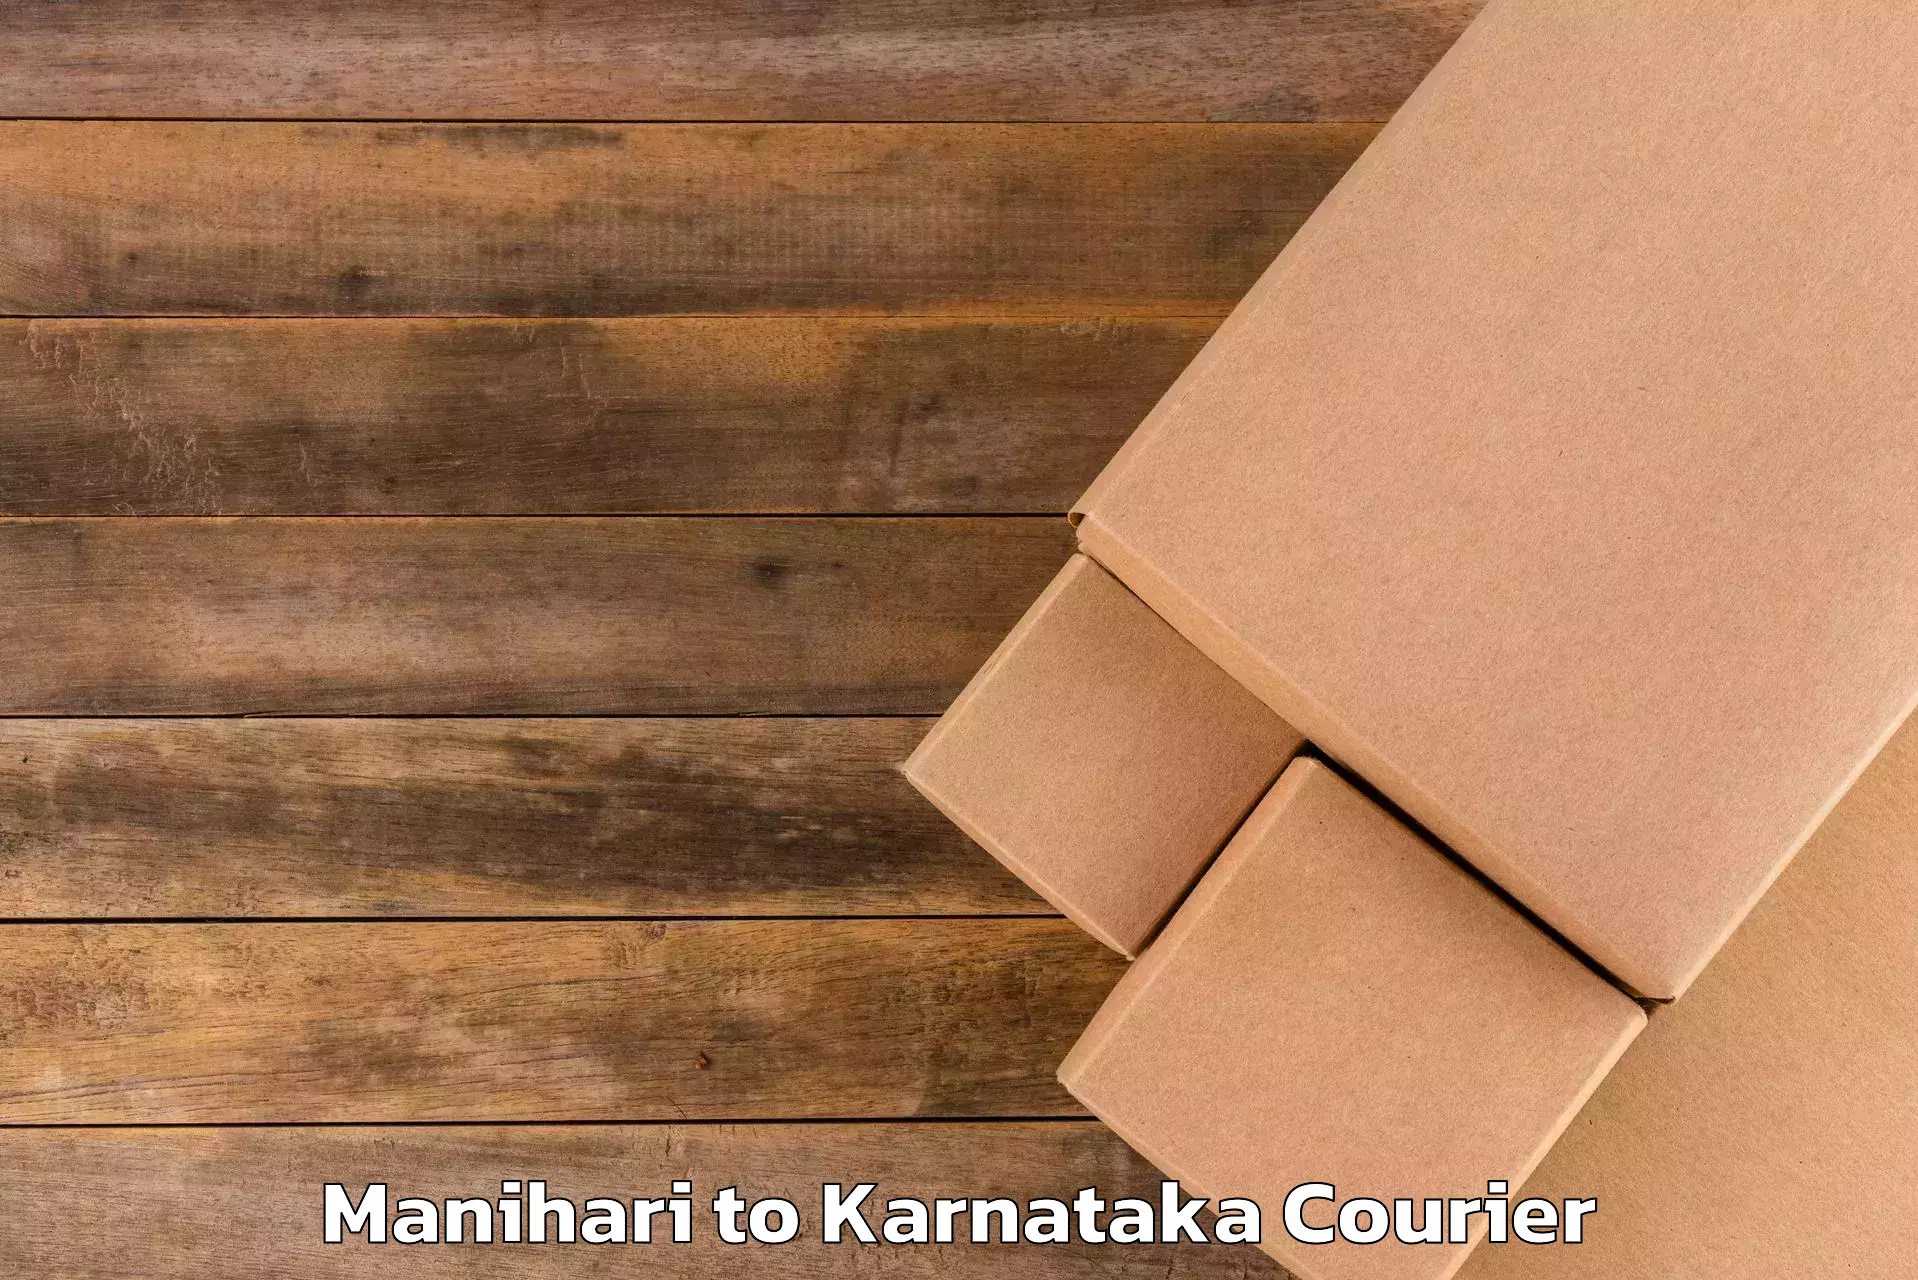 Customized luggage delivery in Manihari to Karnataka